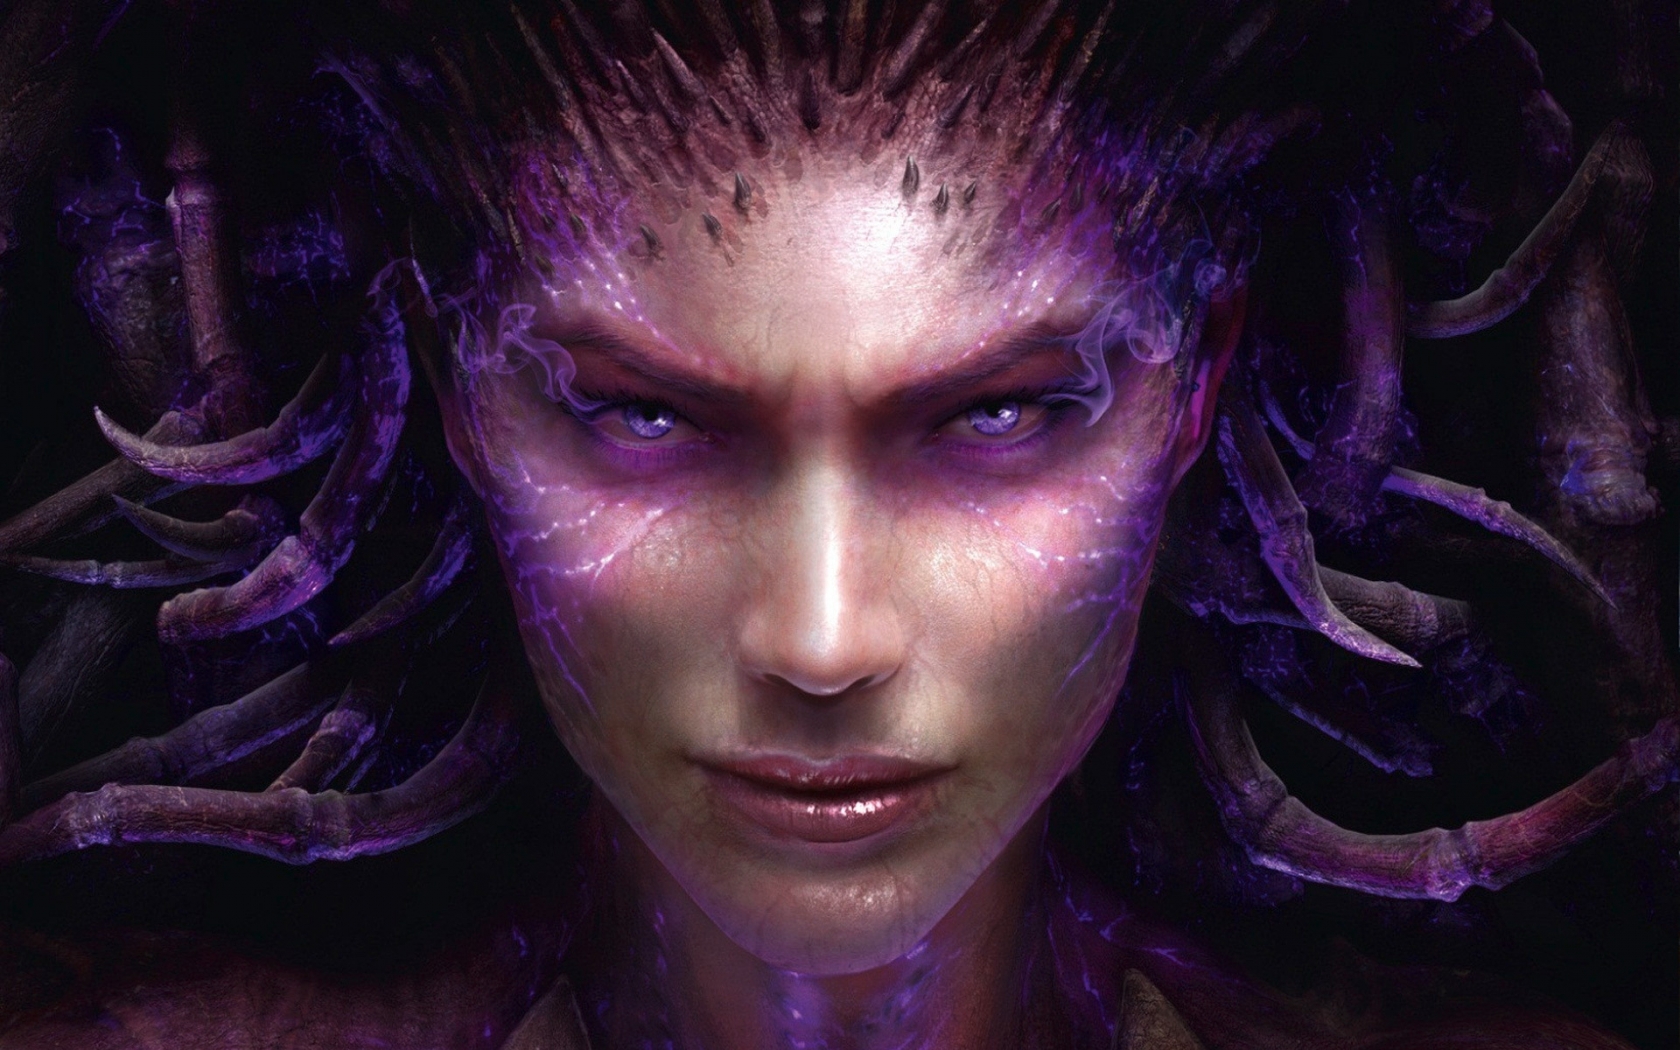 Sarah Kerrigan StarCraft 2 for 1680 x 1050 widescreen resolution